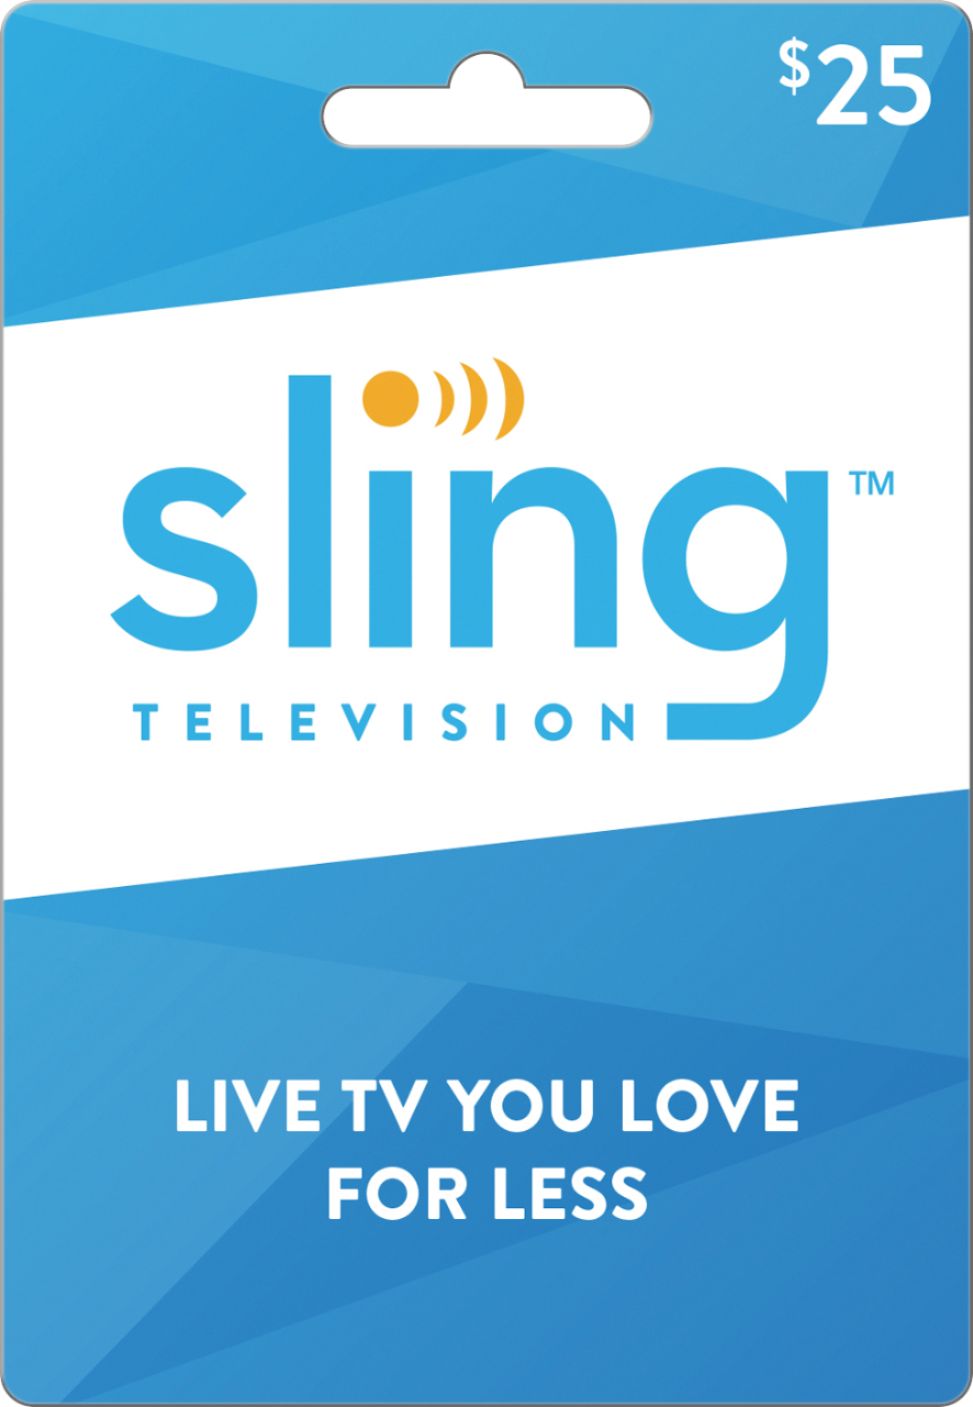 Sling TV - $25 Gift Card